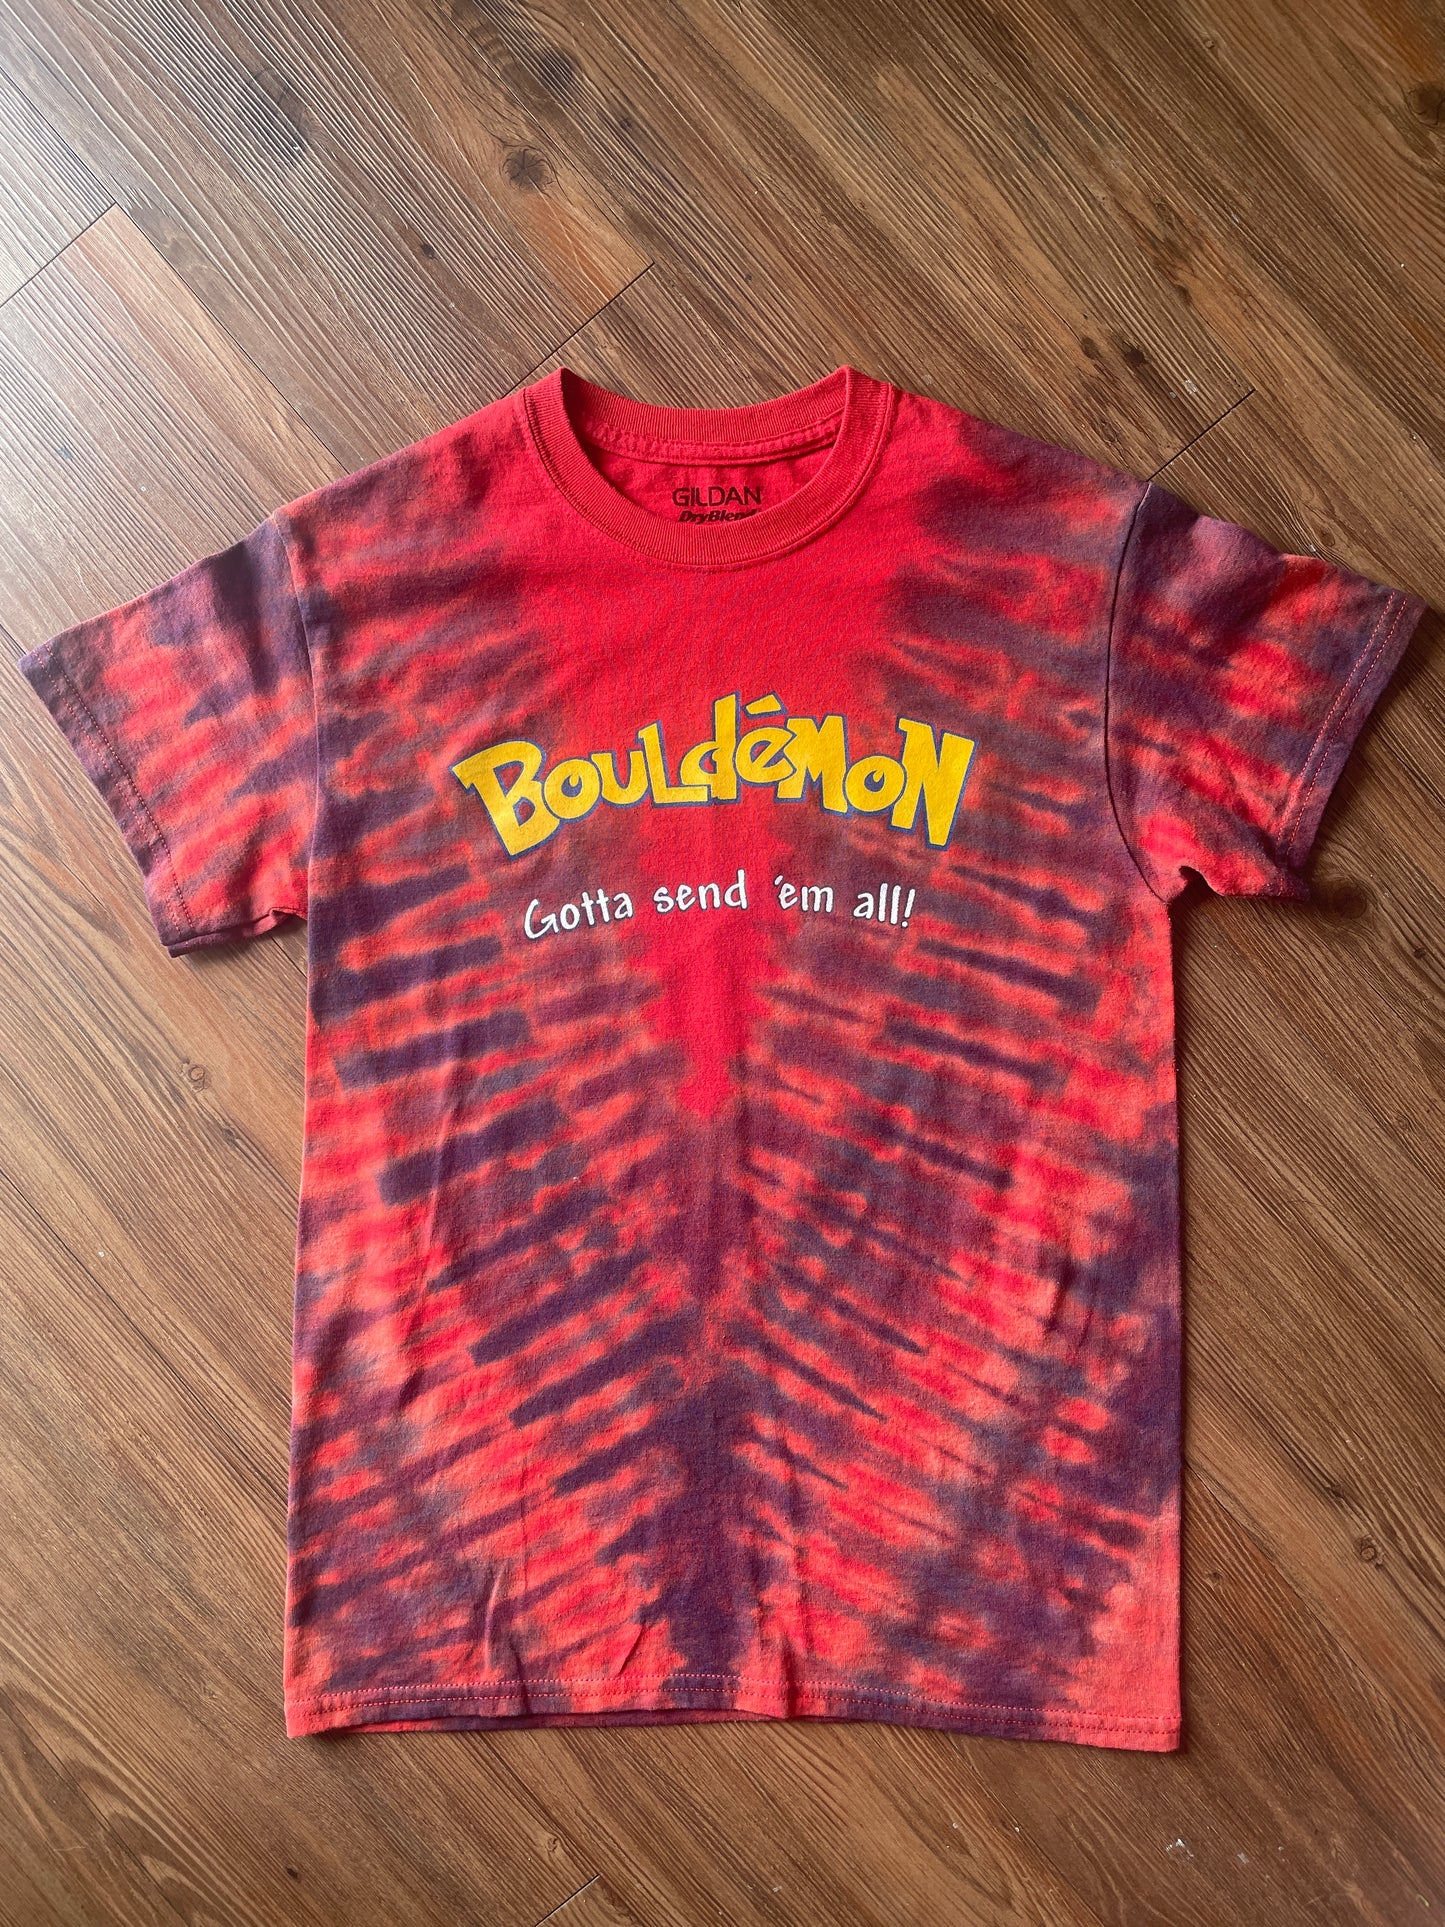 Small Men’s Bouledmon Gotta Send ‘Em All Handmade Tie Dye T-Shirt | Red Bouldering Rock Climbing Tie Dye Short Sleeve